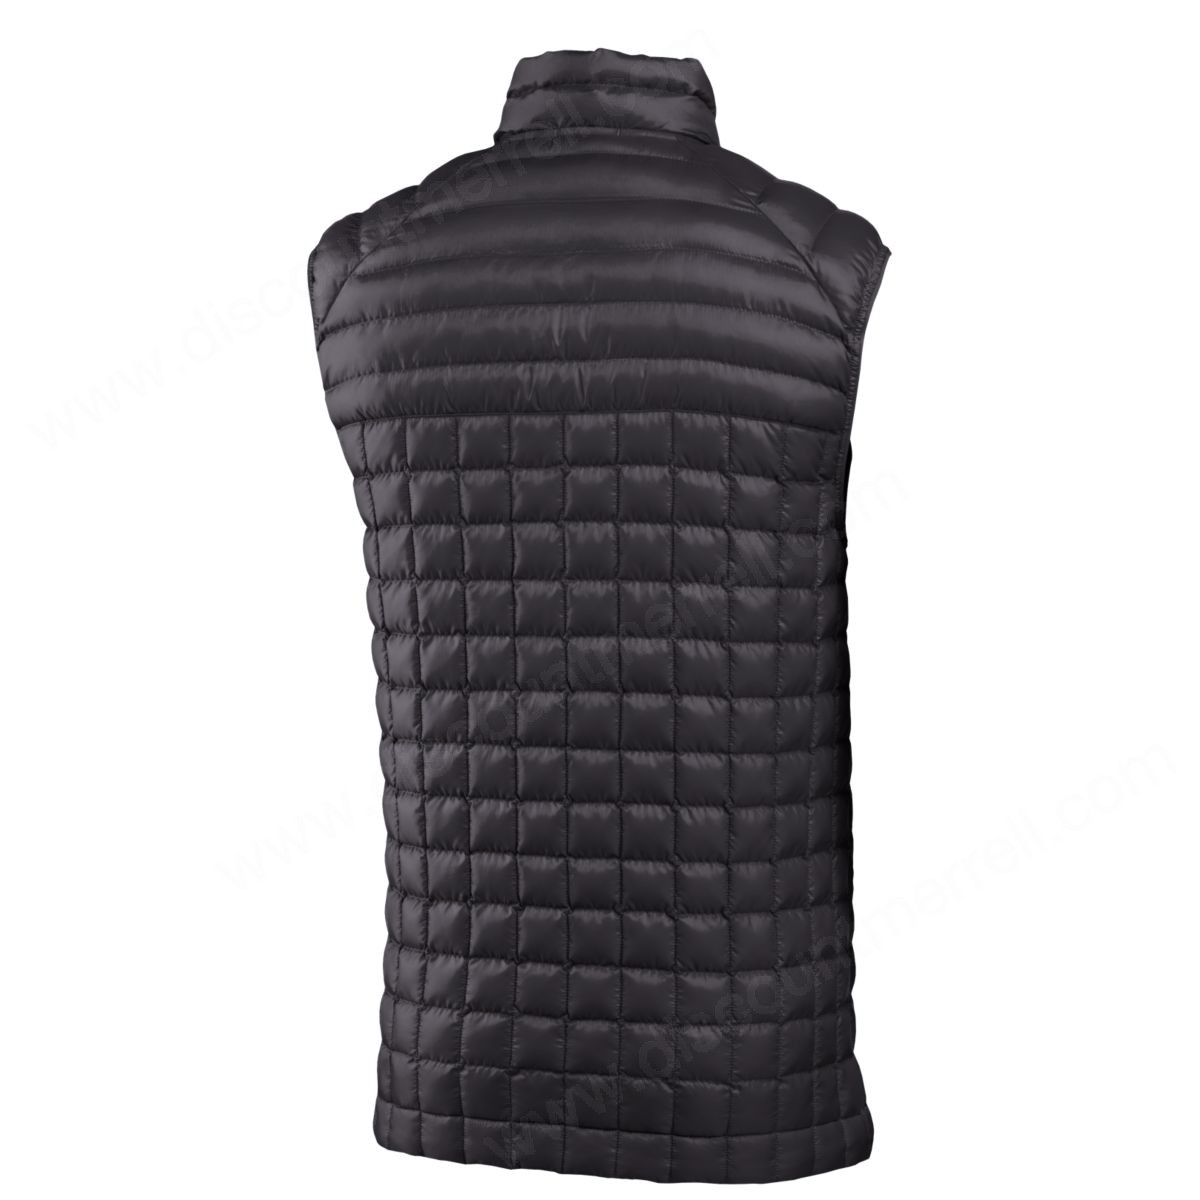 Merrell Men's Micro Lite Puffer Vest Black - -1